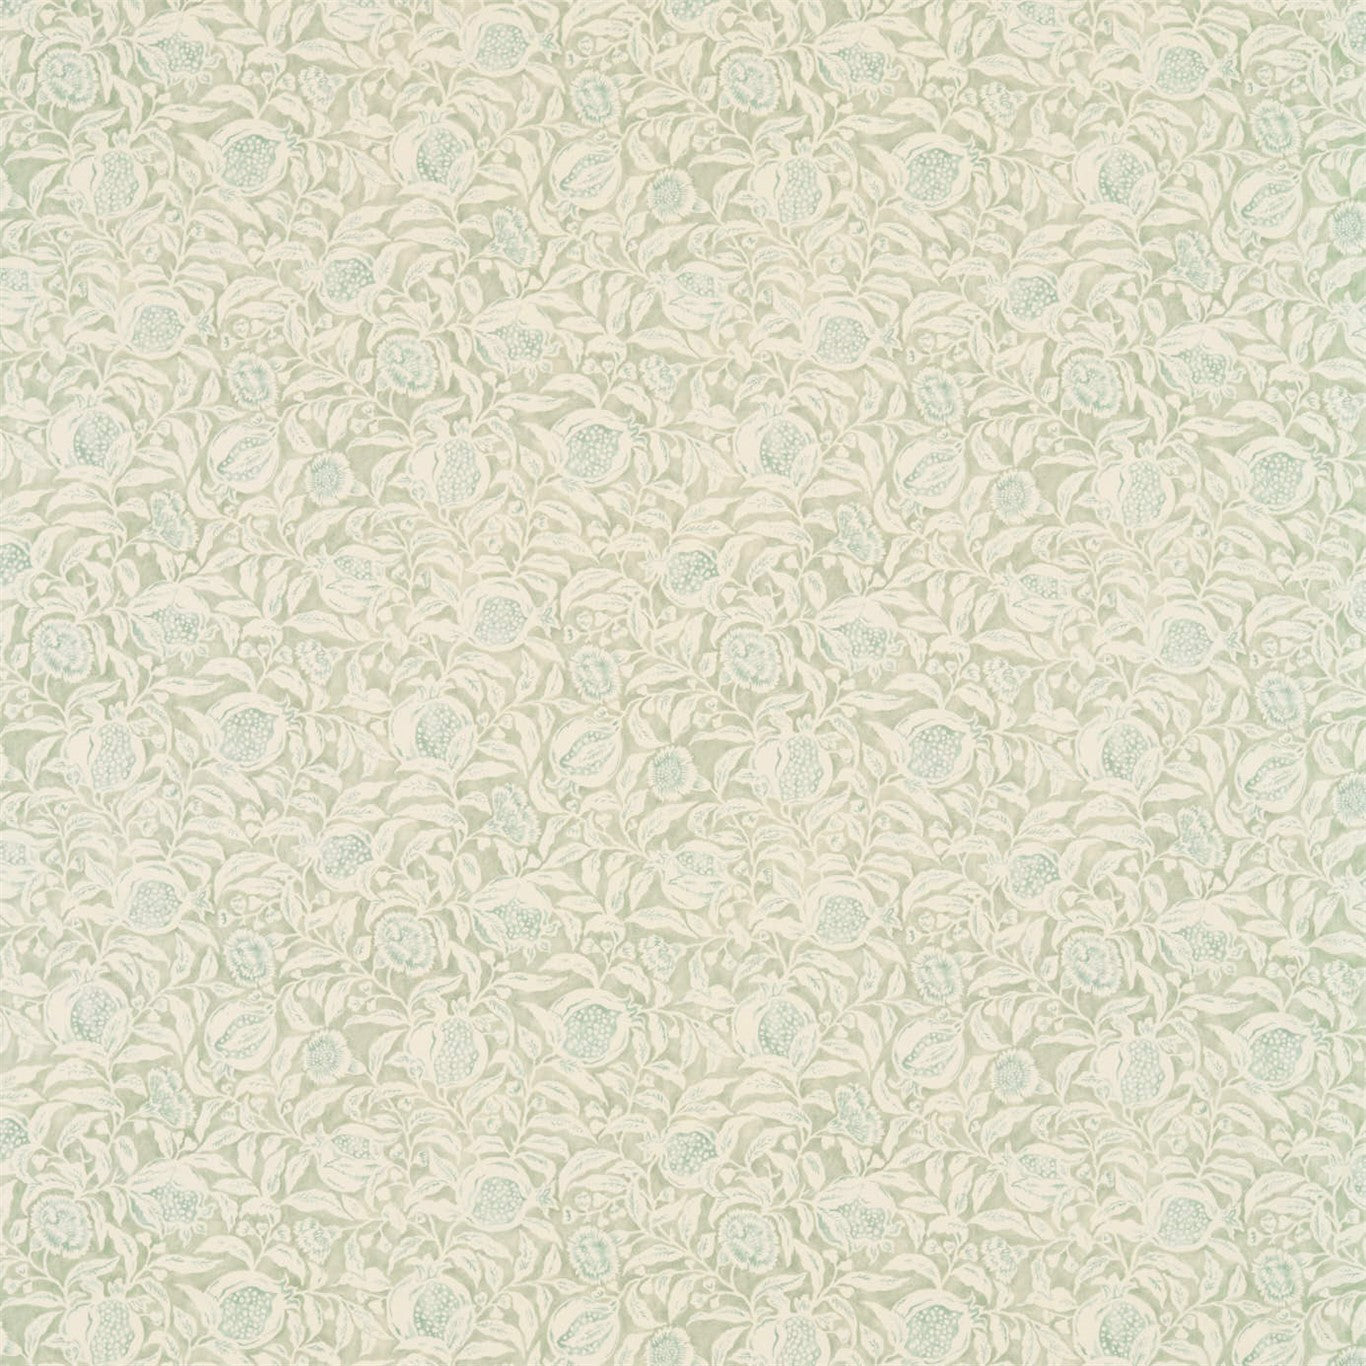 Annandale Fabric by Sanderson - DDAM226373 - Willow/Seaspray